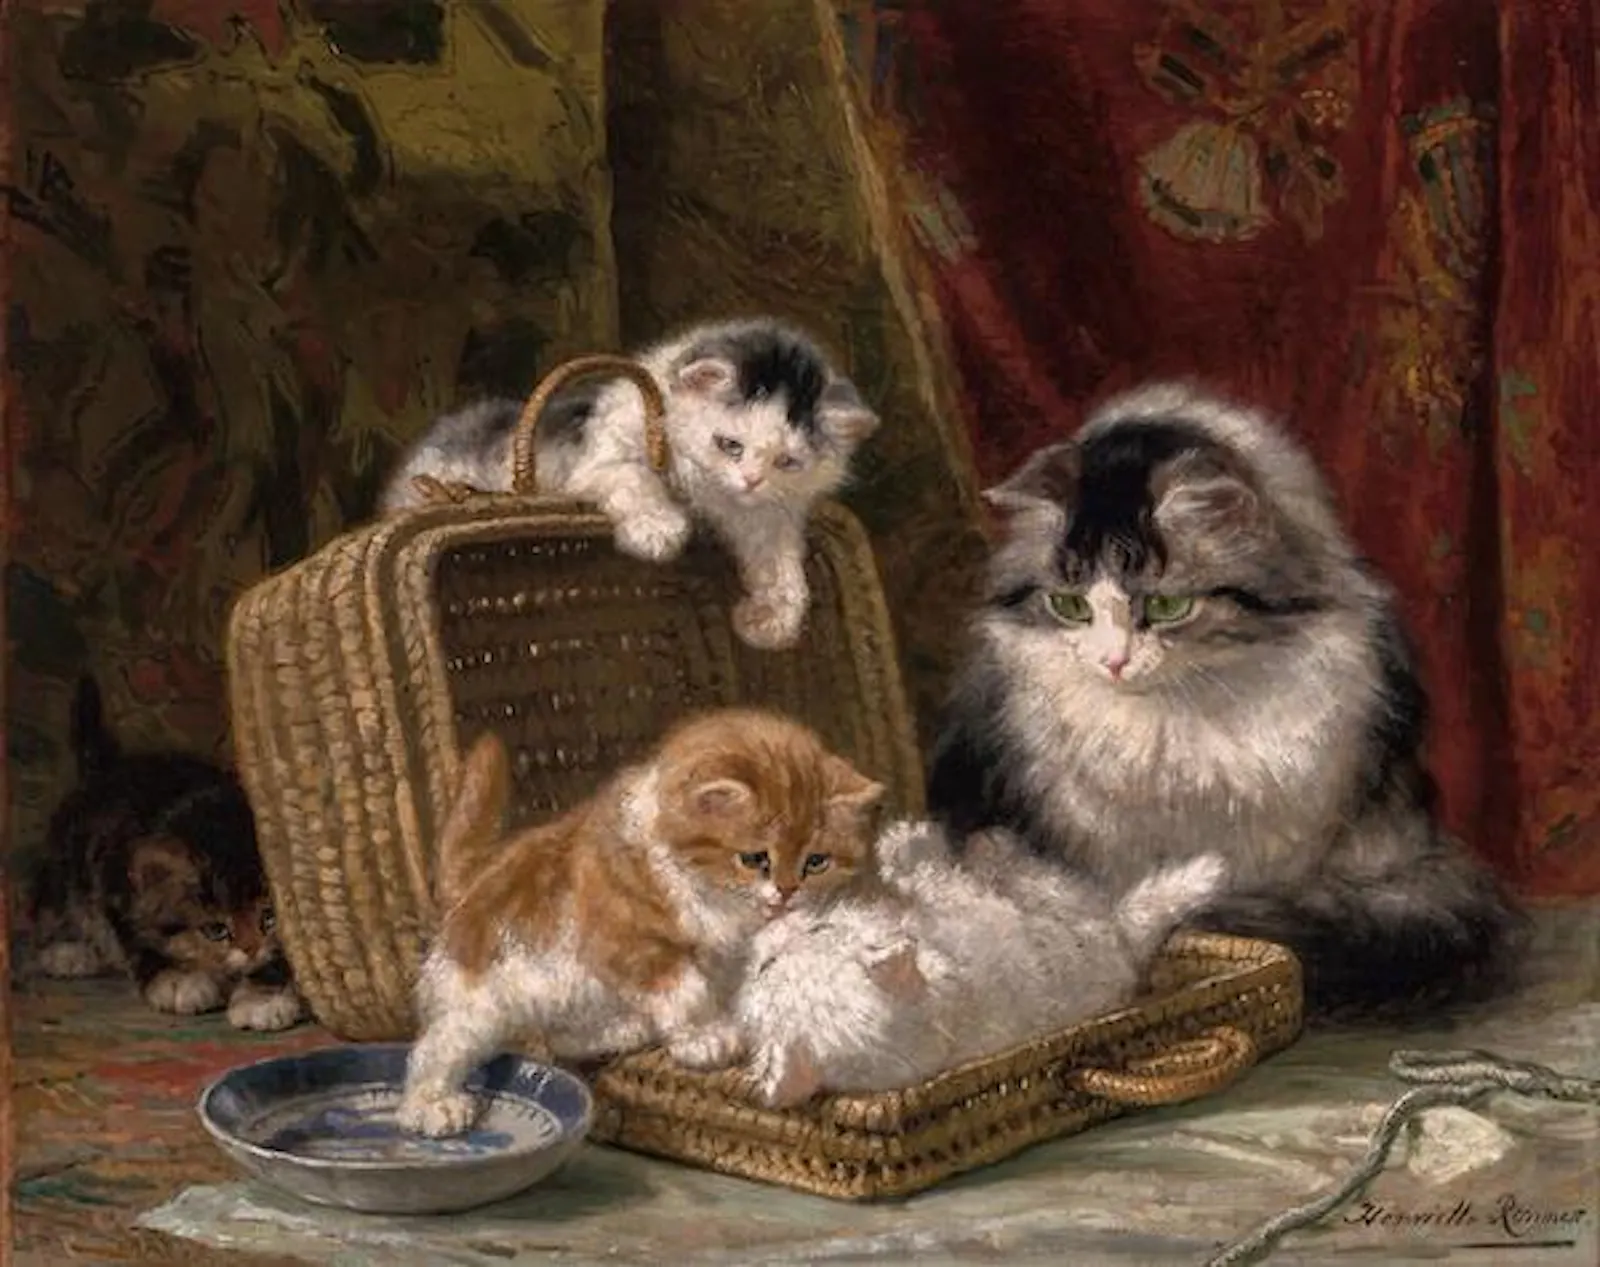 Tres gatitos juegan con un cesto bajo la atenta mirada de su madre. Una escena dulce.